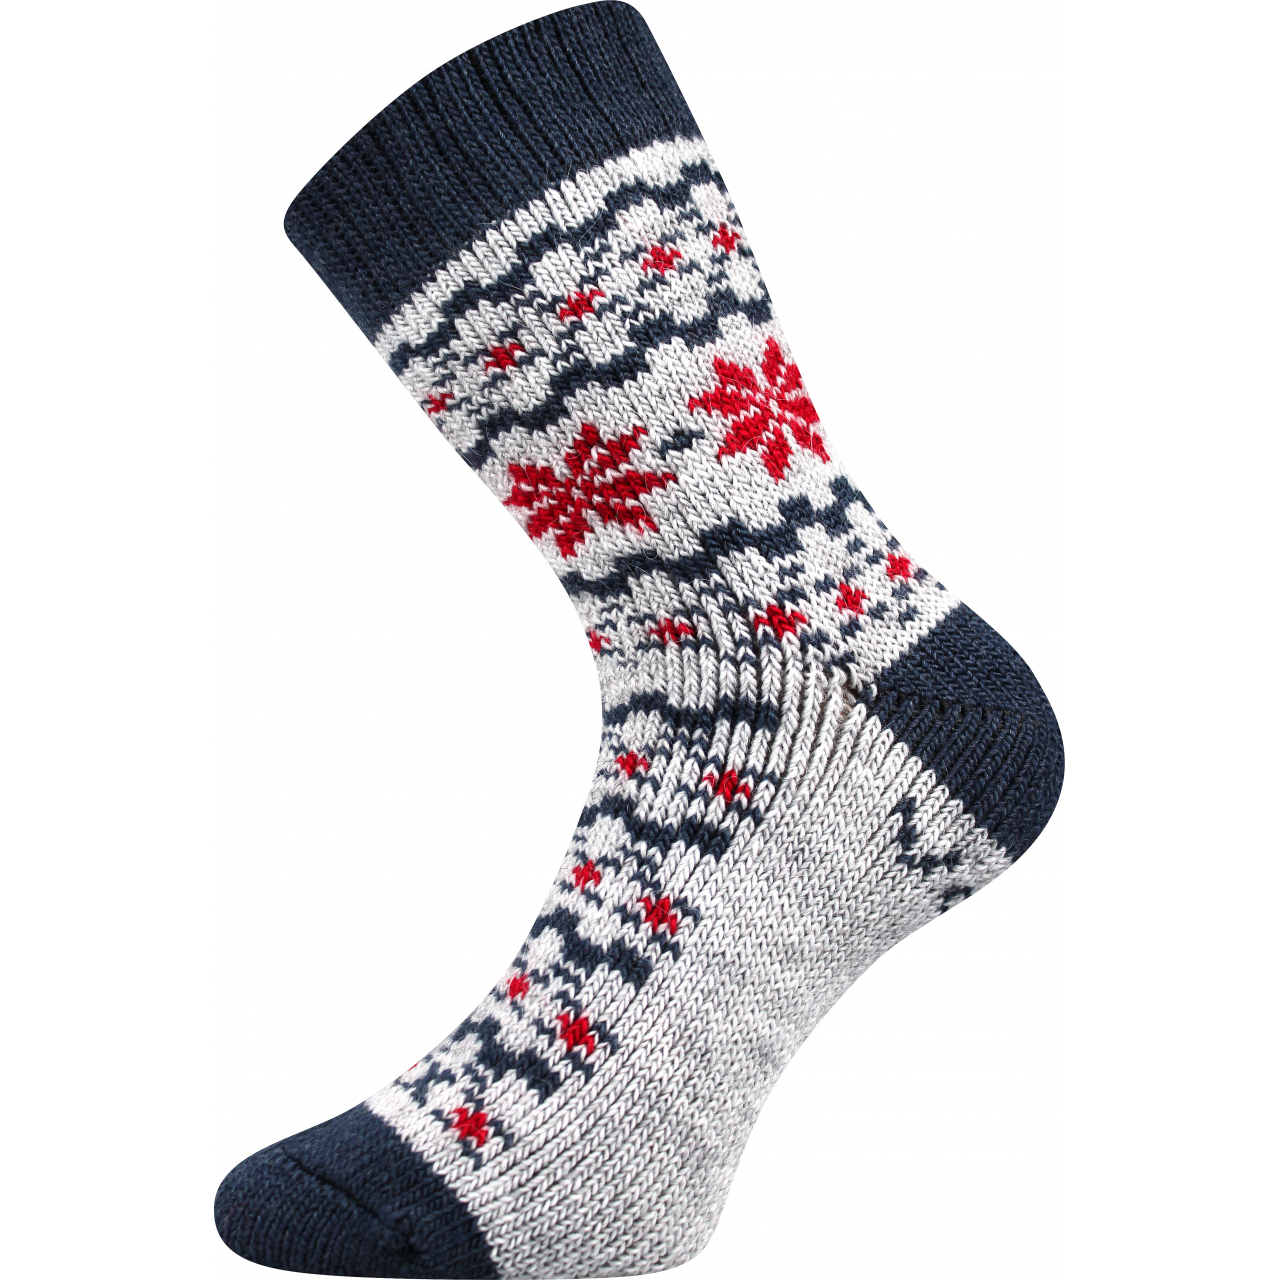 Ponožky unisex zimní Voxx Trondelag - světle šedé, 35-38